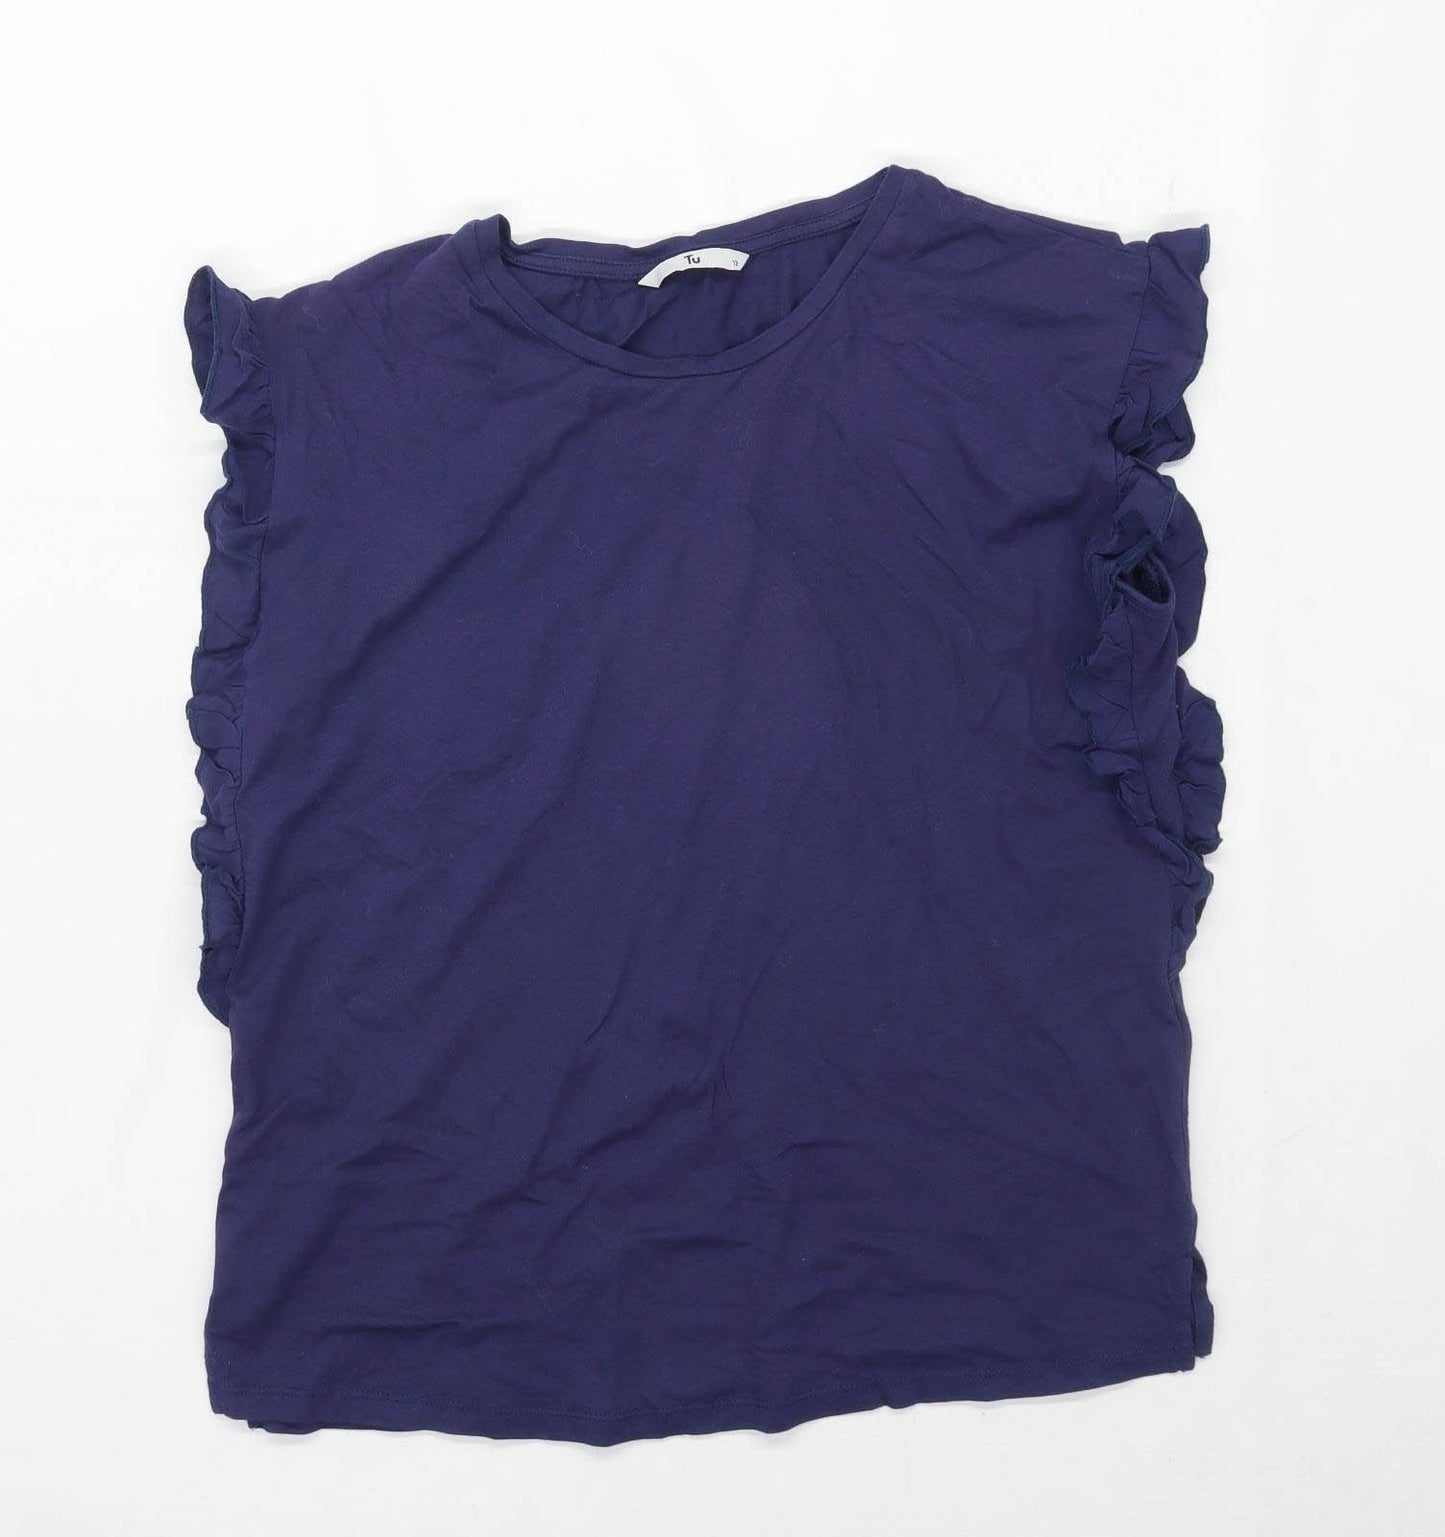 TU Womens Size 12 Cotton Blend Blue Top (Regular)